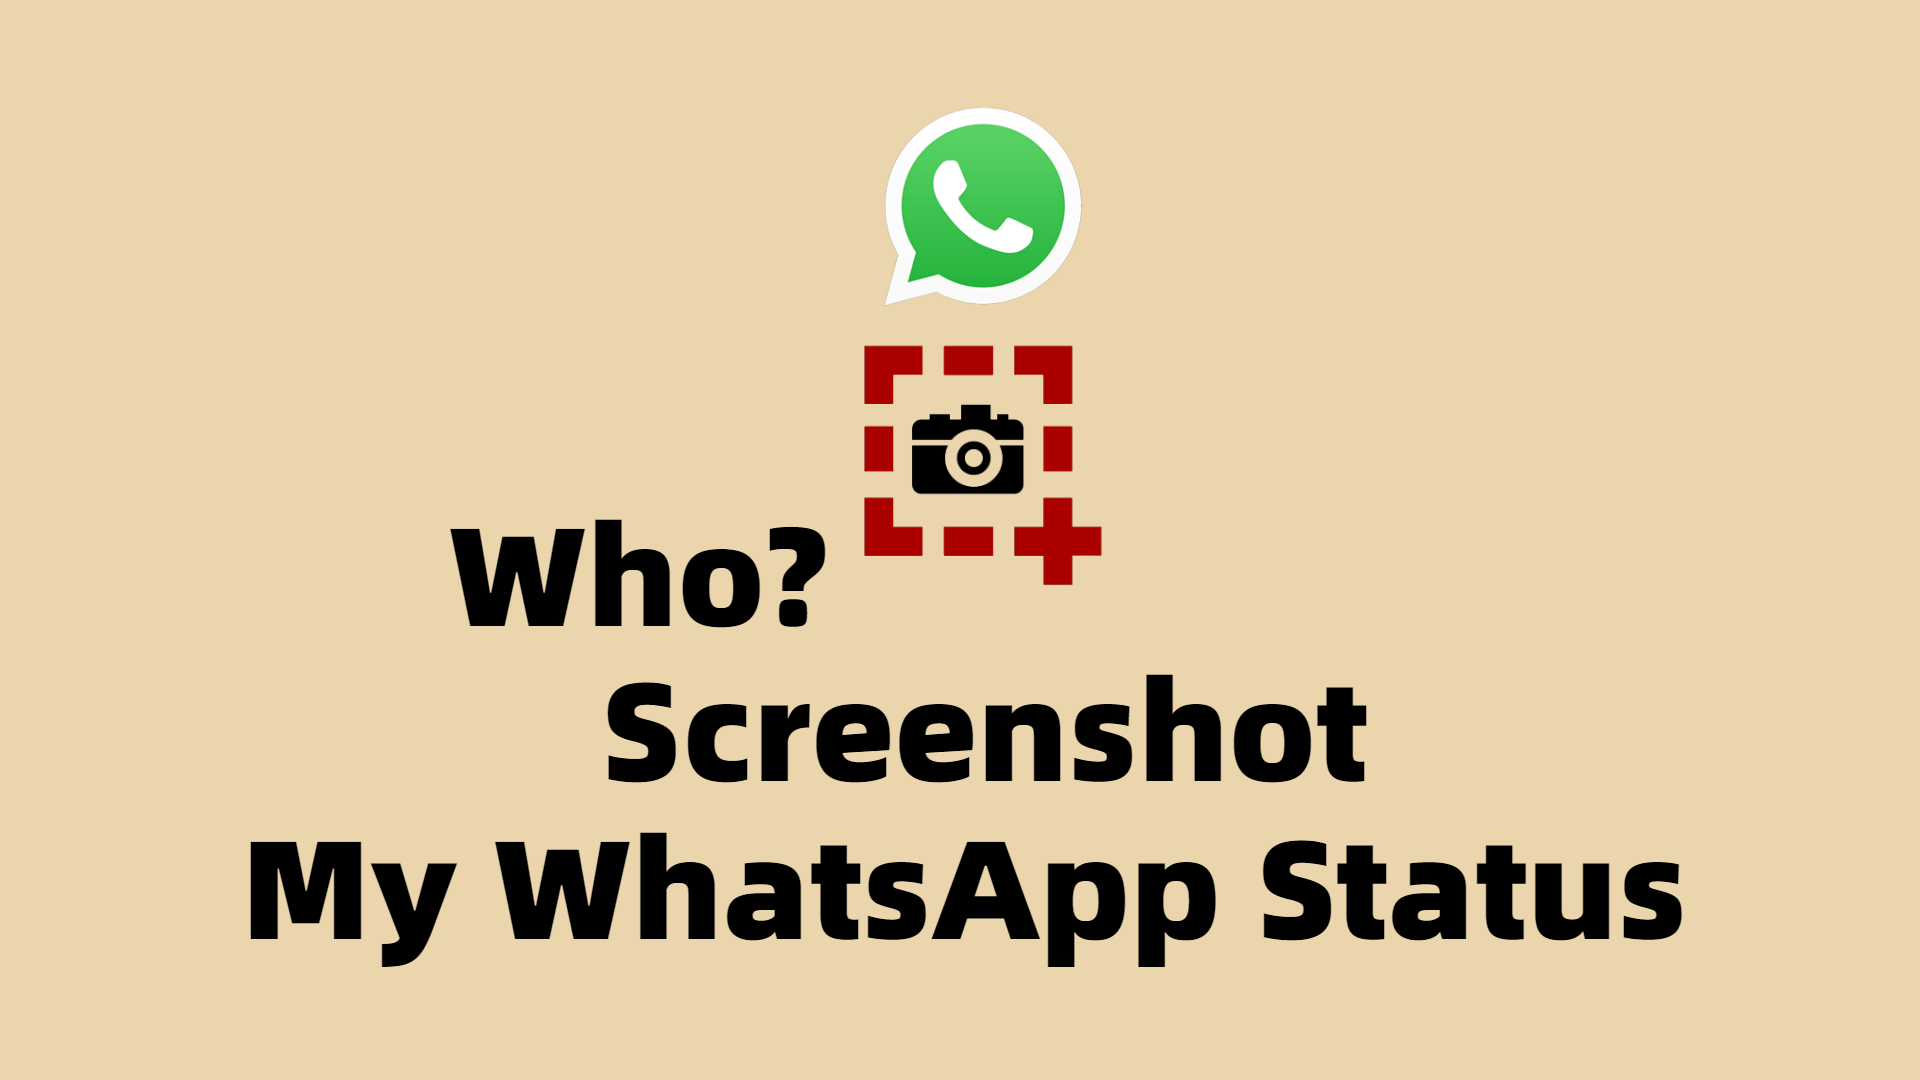 whatsapp status screenshot